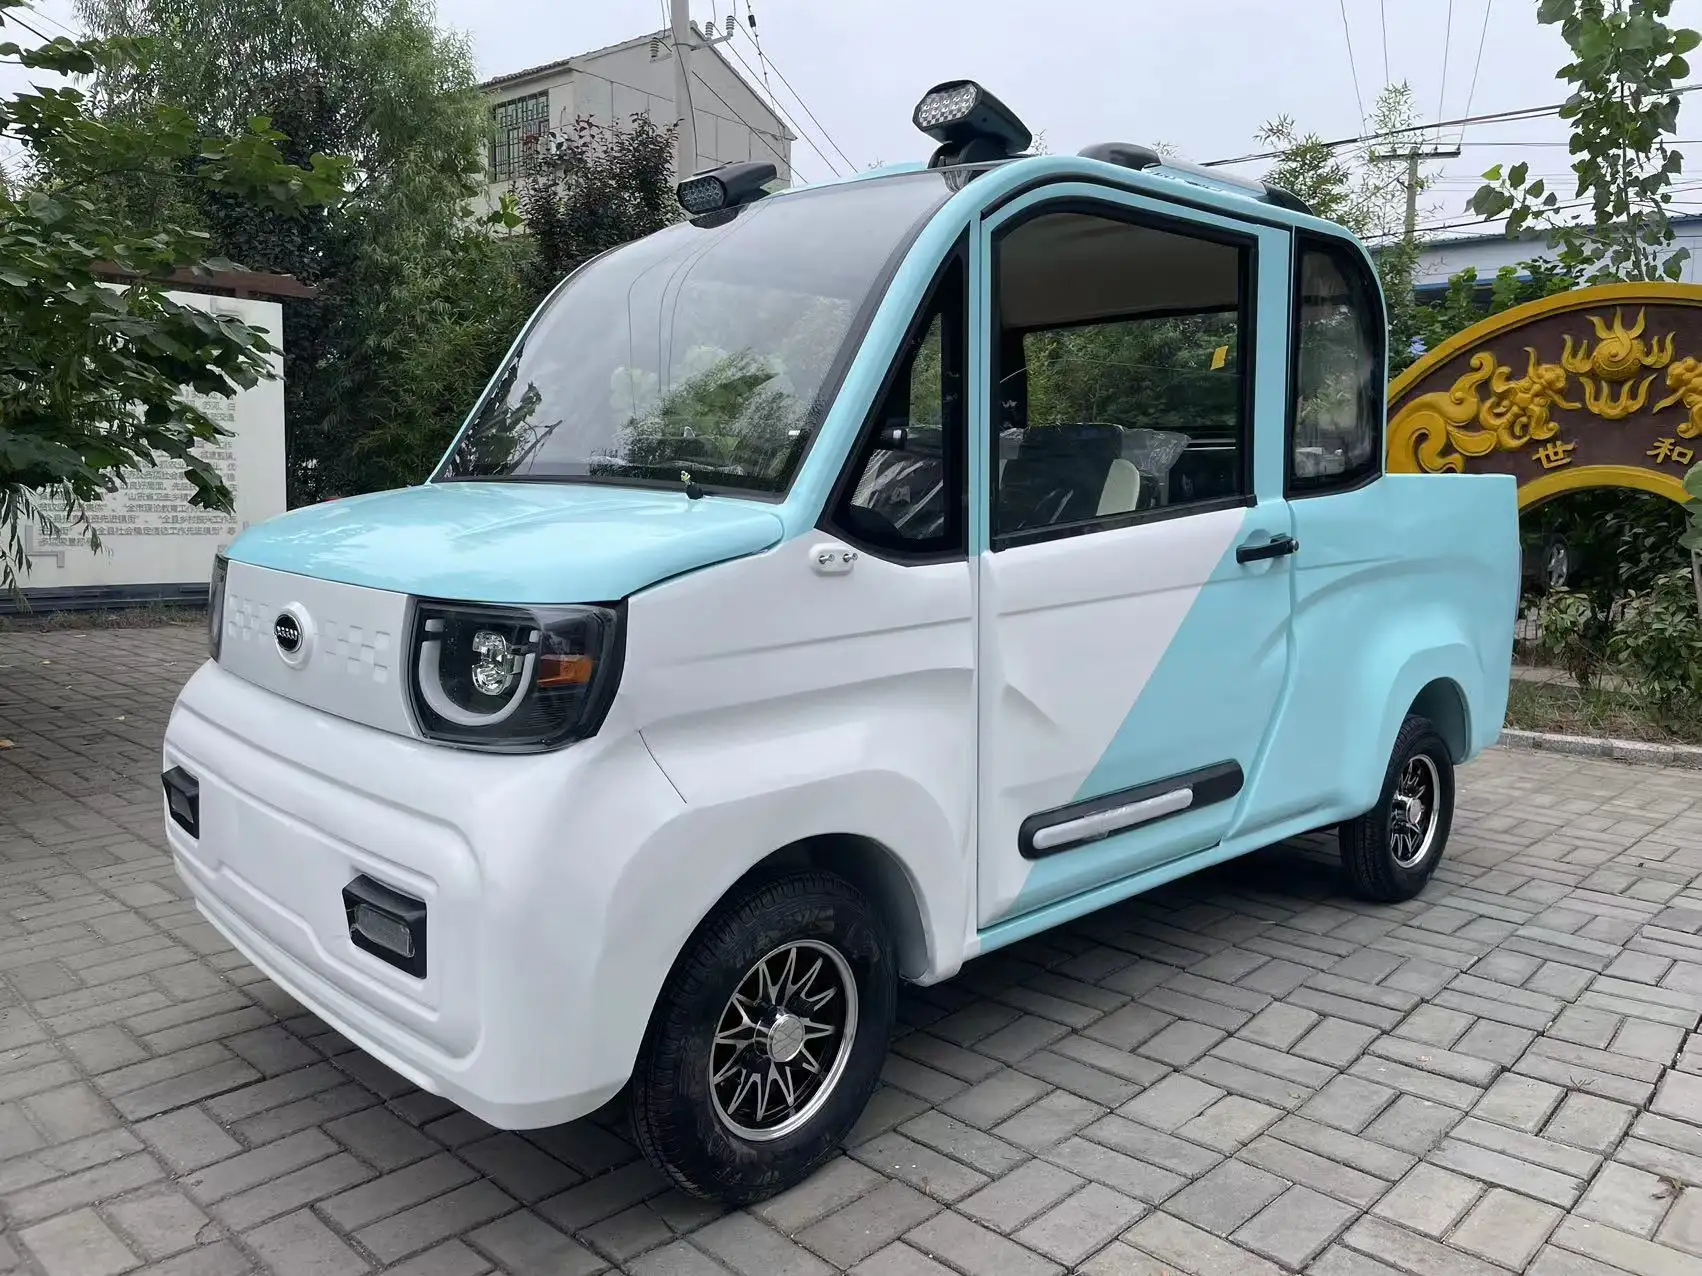 2023 Goedkope Elektrische Vierwielige Auto 'S Volwassenen Elektrische Auto 'S Gemaakt In China